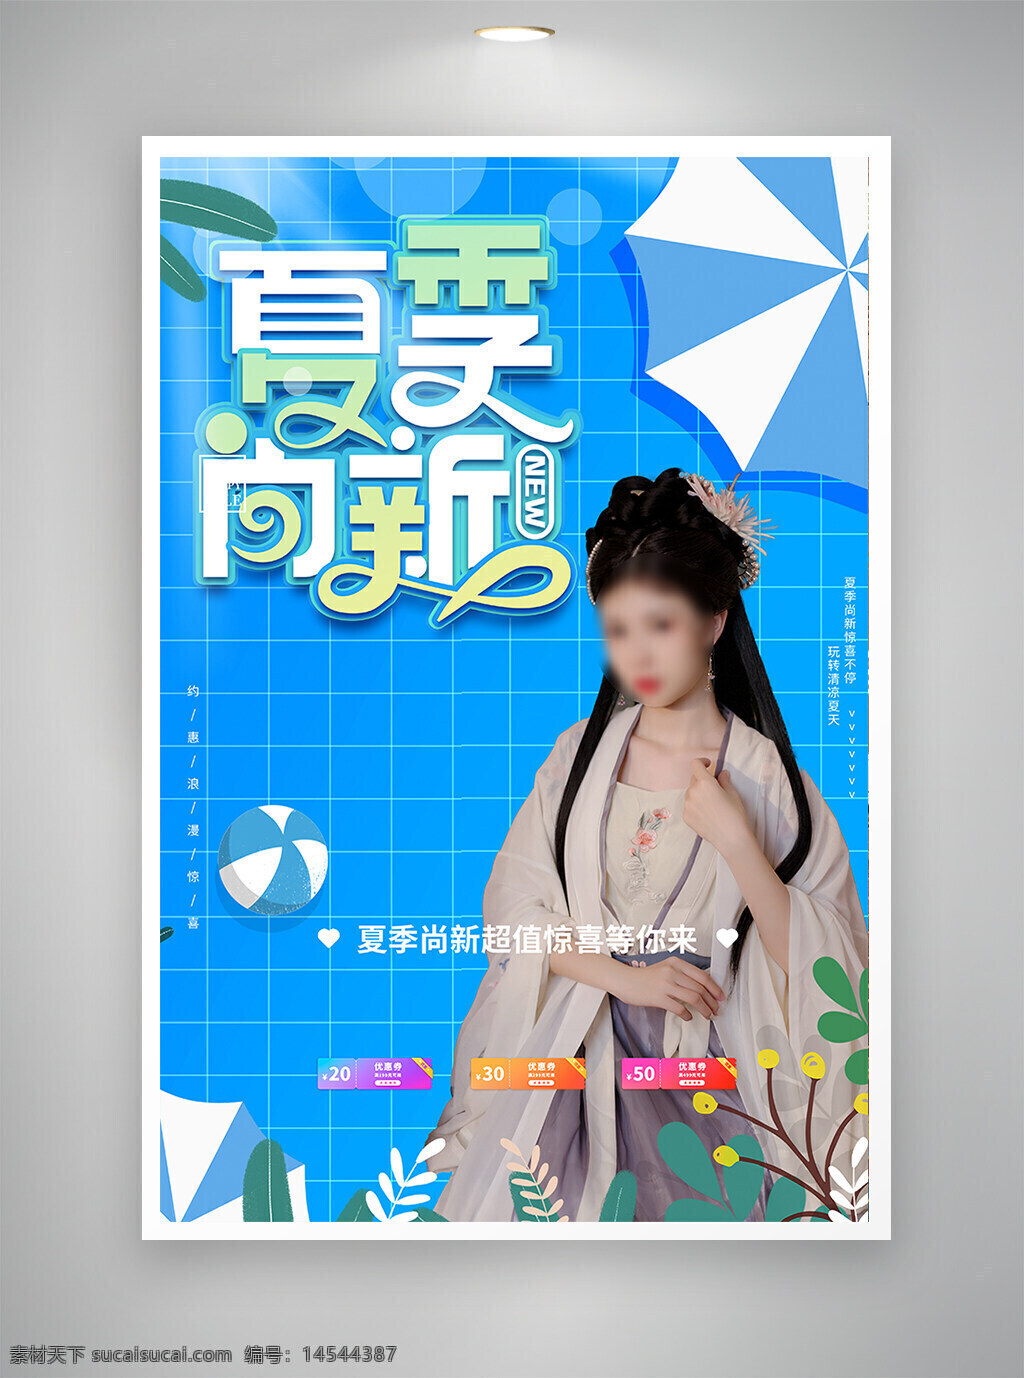 中国风海报 促销海报 节日海报 古风海报 夏日新品